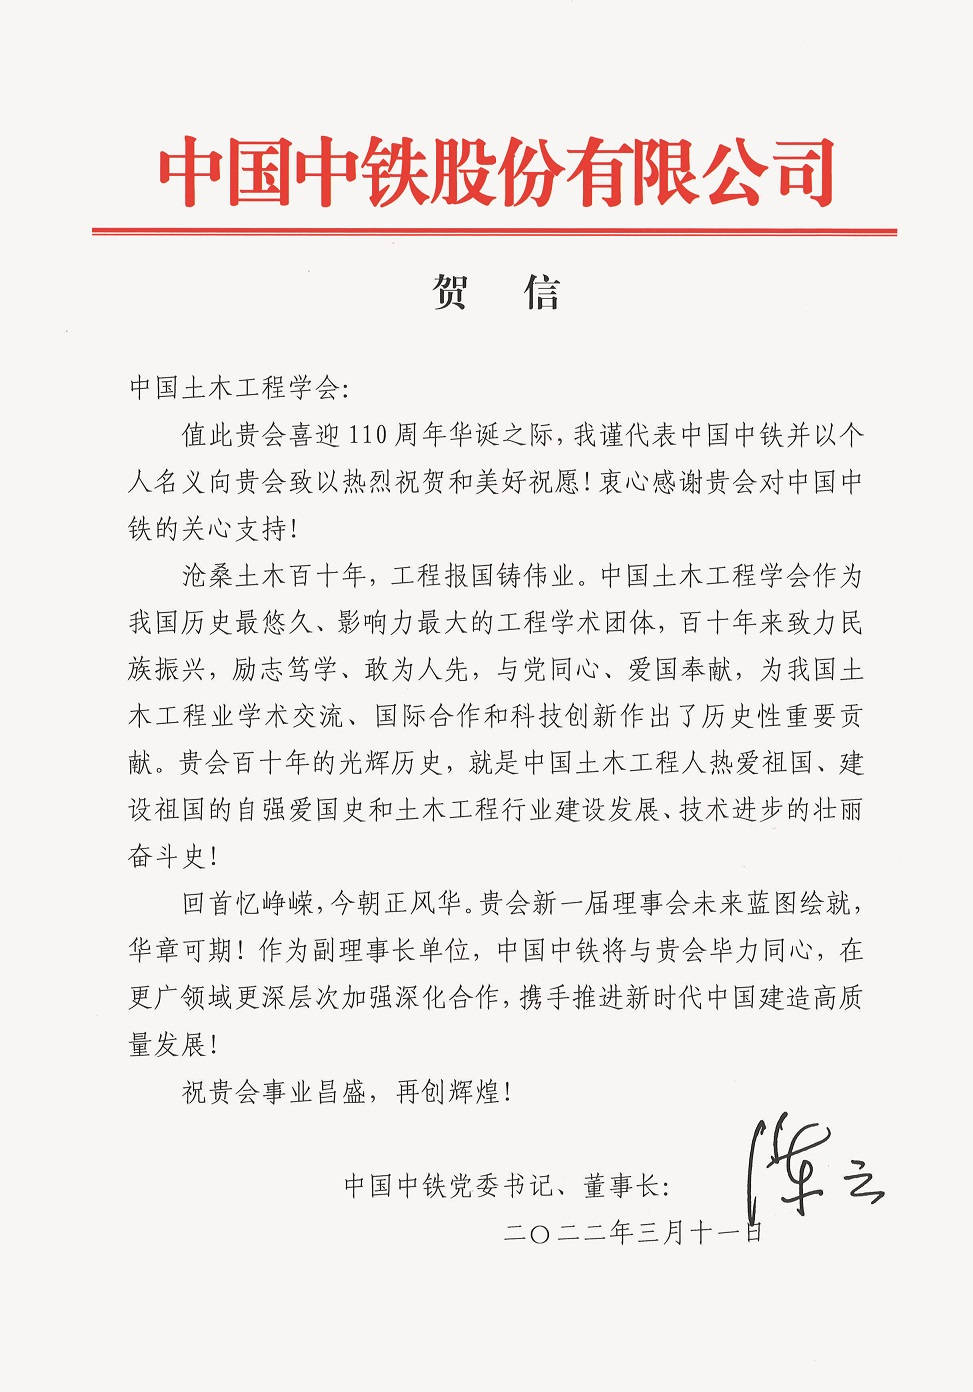 中国中铁股份有限公司党委书记、董事长陈云贺信